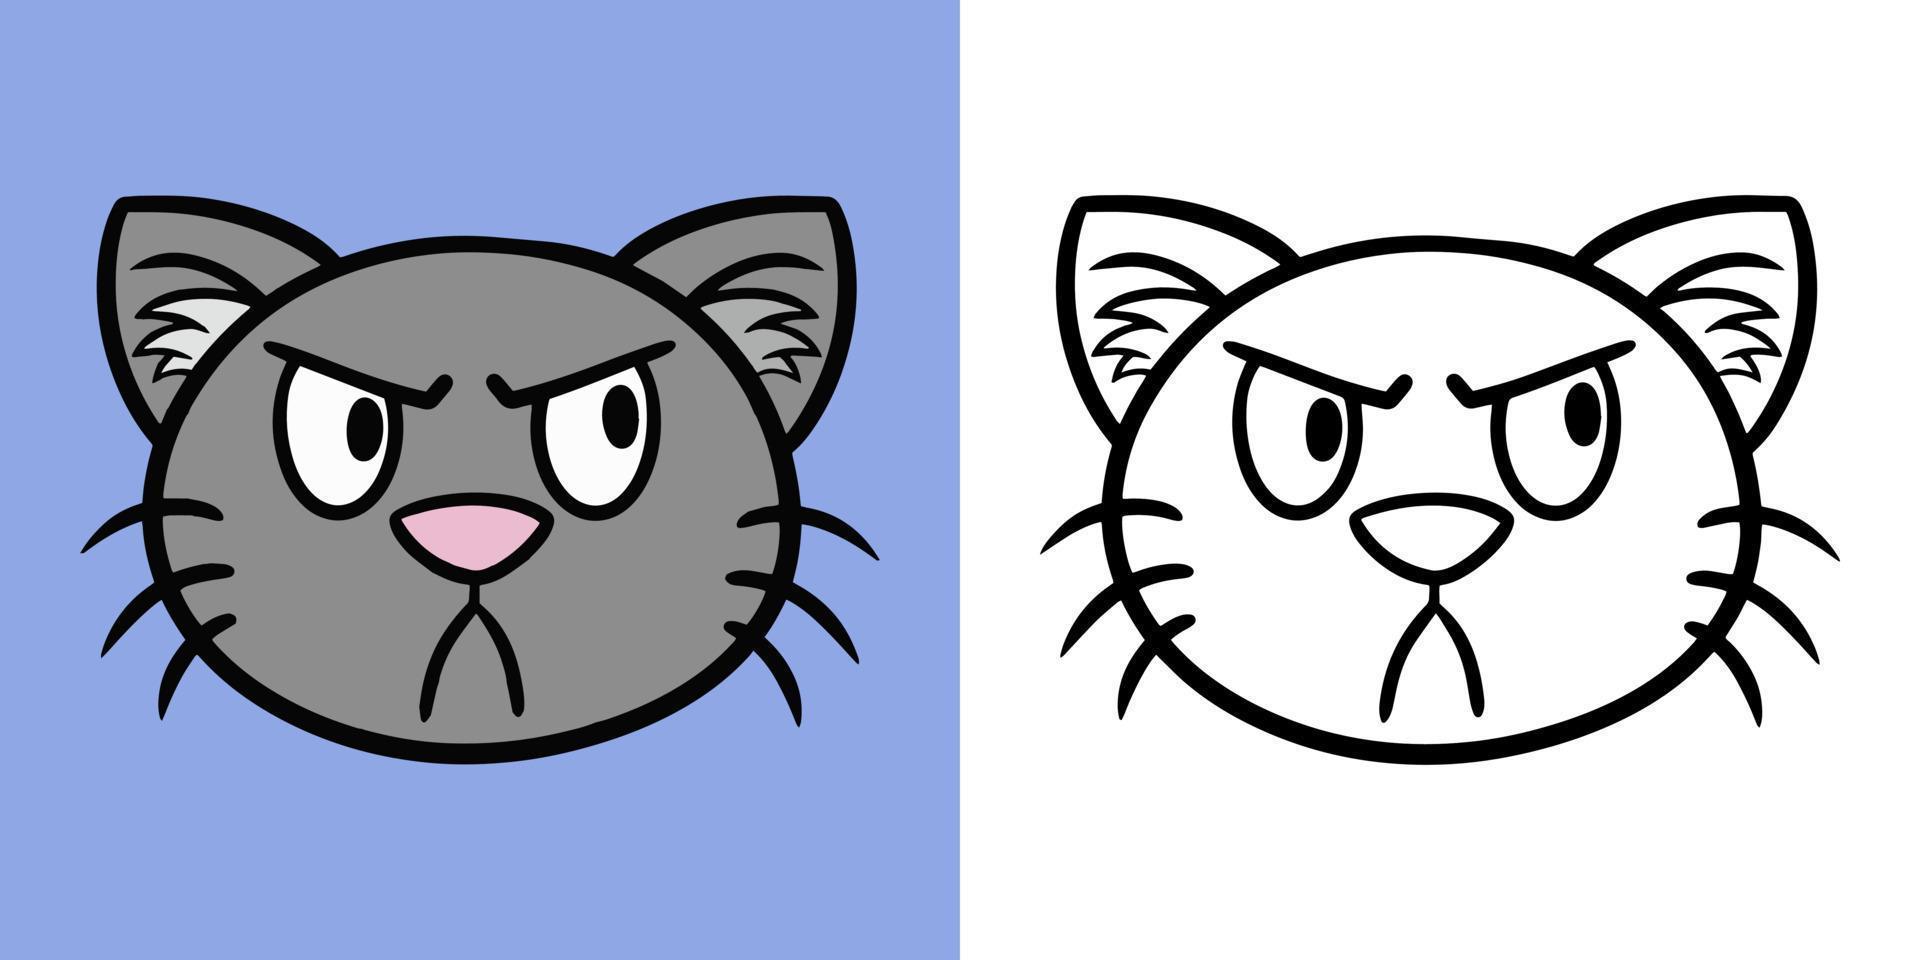 Graue wütende Katze im Cartoon-Stil, horizontale Reihe von Illustrationen zum Ausmalen von Büchern, Vektorillustration vektor